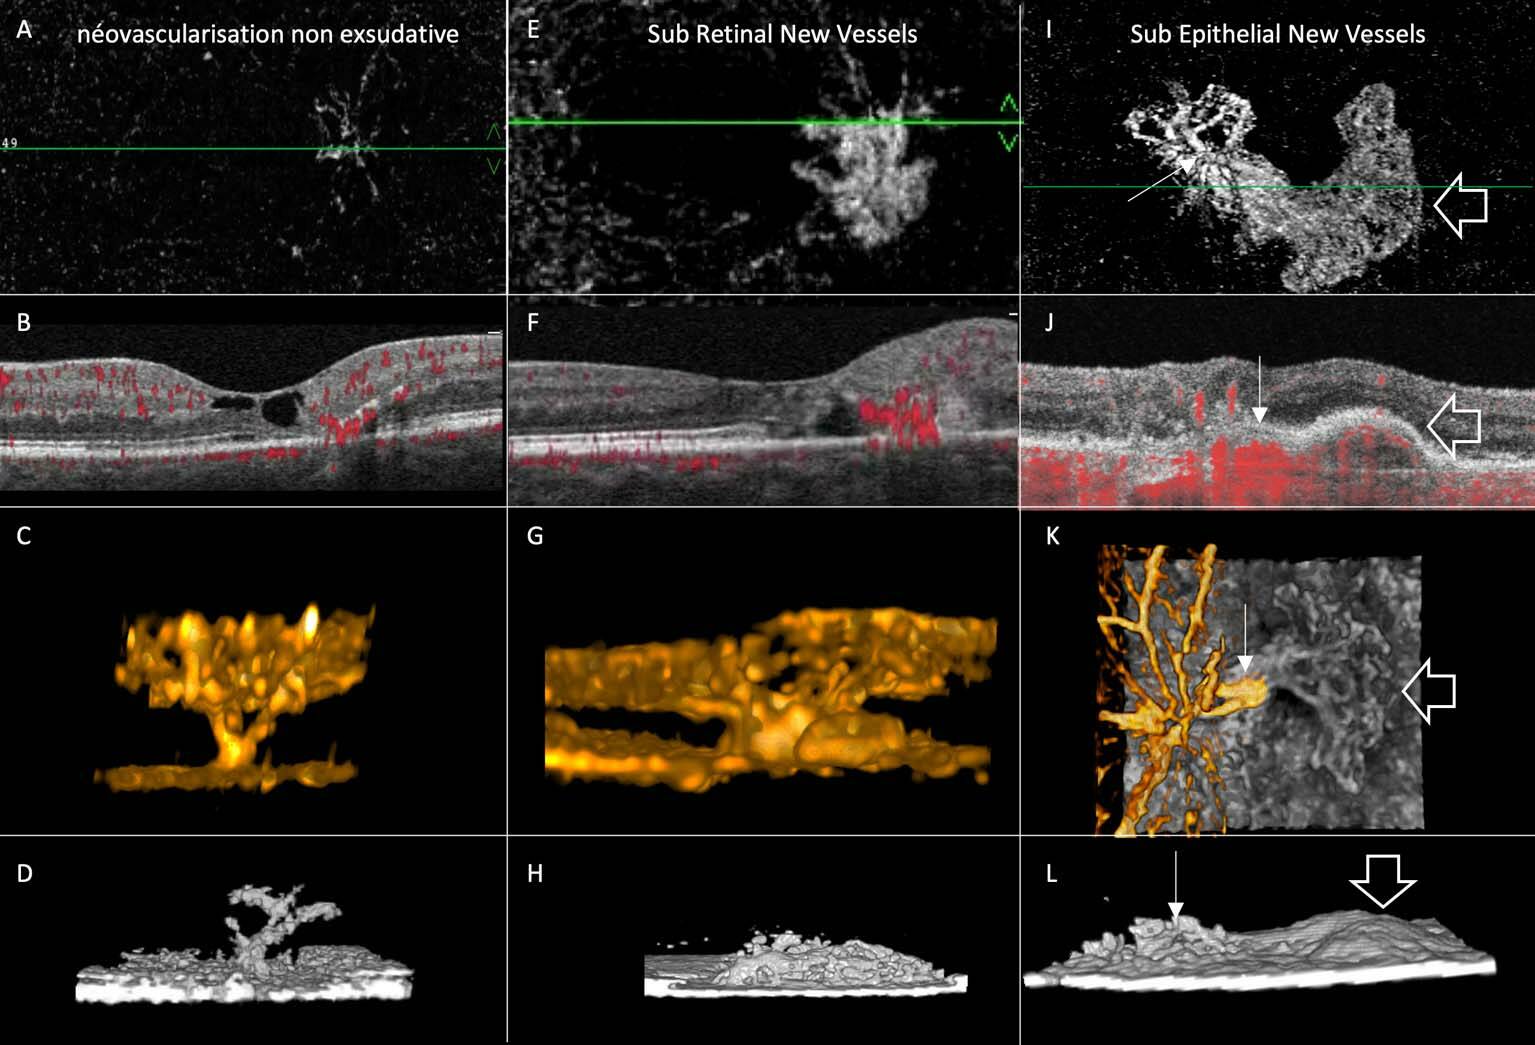 Figure 2. A, B, C et D. Néovascularisation non exsudative. C-scan (A) et B-scan (B) de l’examen en tomographie en cohérence optique angiographique (OCT-A) : prolifération vasculaire issue des télangiectasies du complexe capillaire profond (CCP) envahissant les couches externes dans la rupture de l’ellipsoïde. C. La reconstruction en 3D du signal de flux permet de visualiser les tractus néovasculaires. D. La reconstruction en 3D des hyperréflectivités permet de visualiser les migrations pigmentaires « moulant » les proliférations vasculaires. E, F, G et H. Néovascularisation sous-rétinienne. E. Le lassis néovasculaire est visible sur le C-scan. G. La reconstruction en 3D confirme la connexion entre celui-ci et les télangiectasies du CCP. H. Hyperréflectivité en dôme, irrégulière, du néovaisseau. I, J, K et L. Néovascularisation sous-épithéliale. I. On visualise la connexion entre le néovaisseau sous-rétinien et son extension sous l’épithélium pigmentaire. K. La reconstruction en 3D la met également bien en évidence. La reconstruction en 3D des hyperréflectivités permet de bien distinguer l’hyperréflectivité en dôme irrégulière du néovaisseau sous-rétinien, au-dessus de l’épithélium pigmentaire, et l’hyperréflectivité lisse de l’extension sous-épithéliale.
